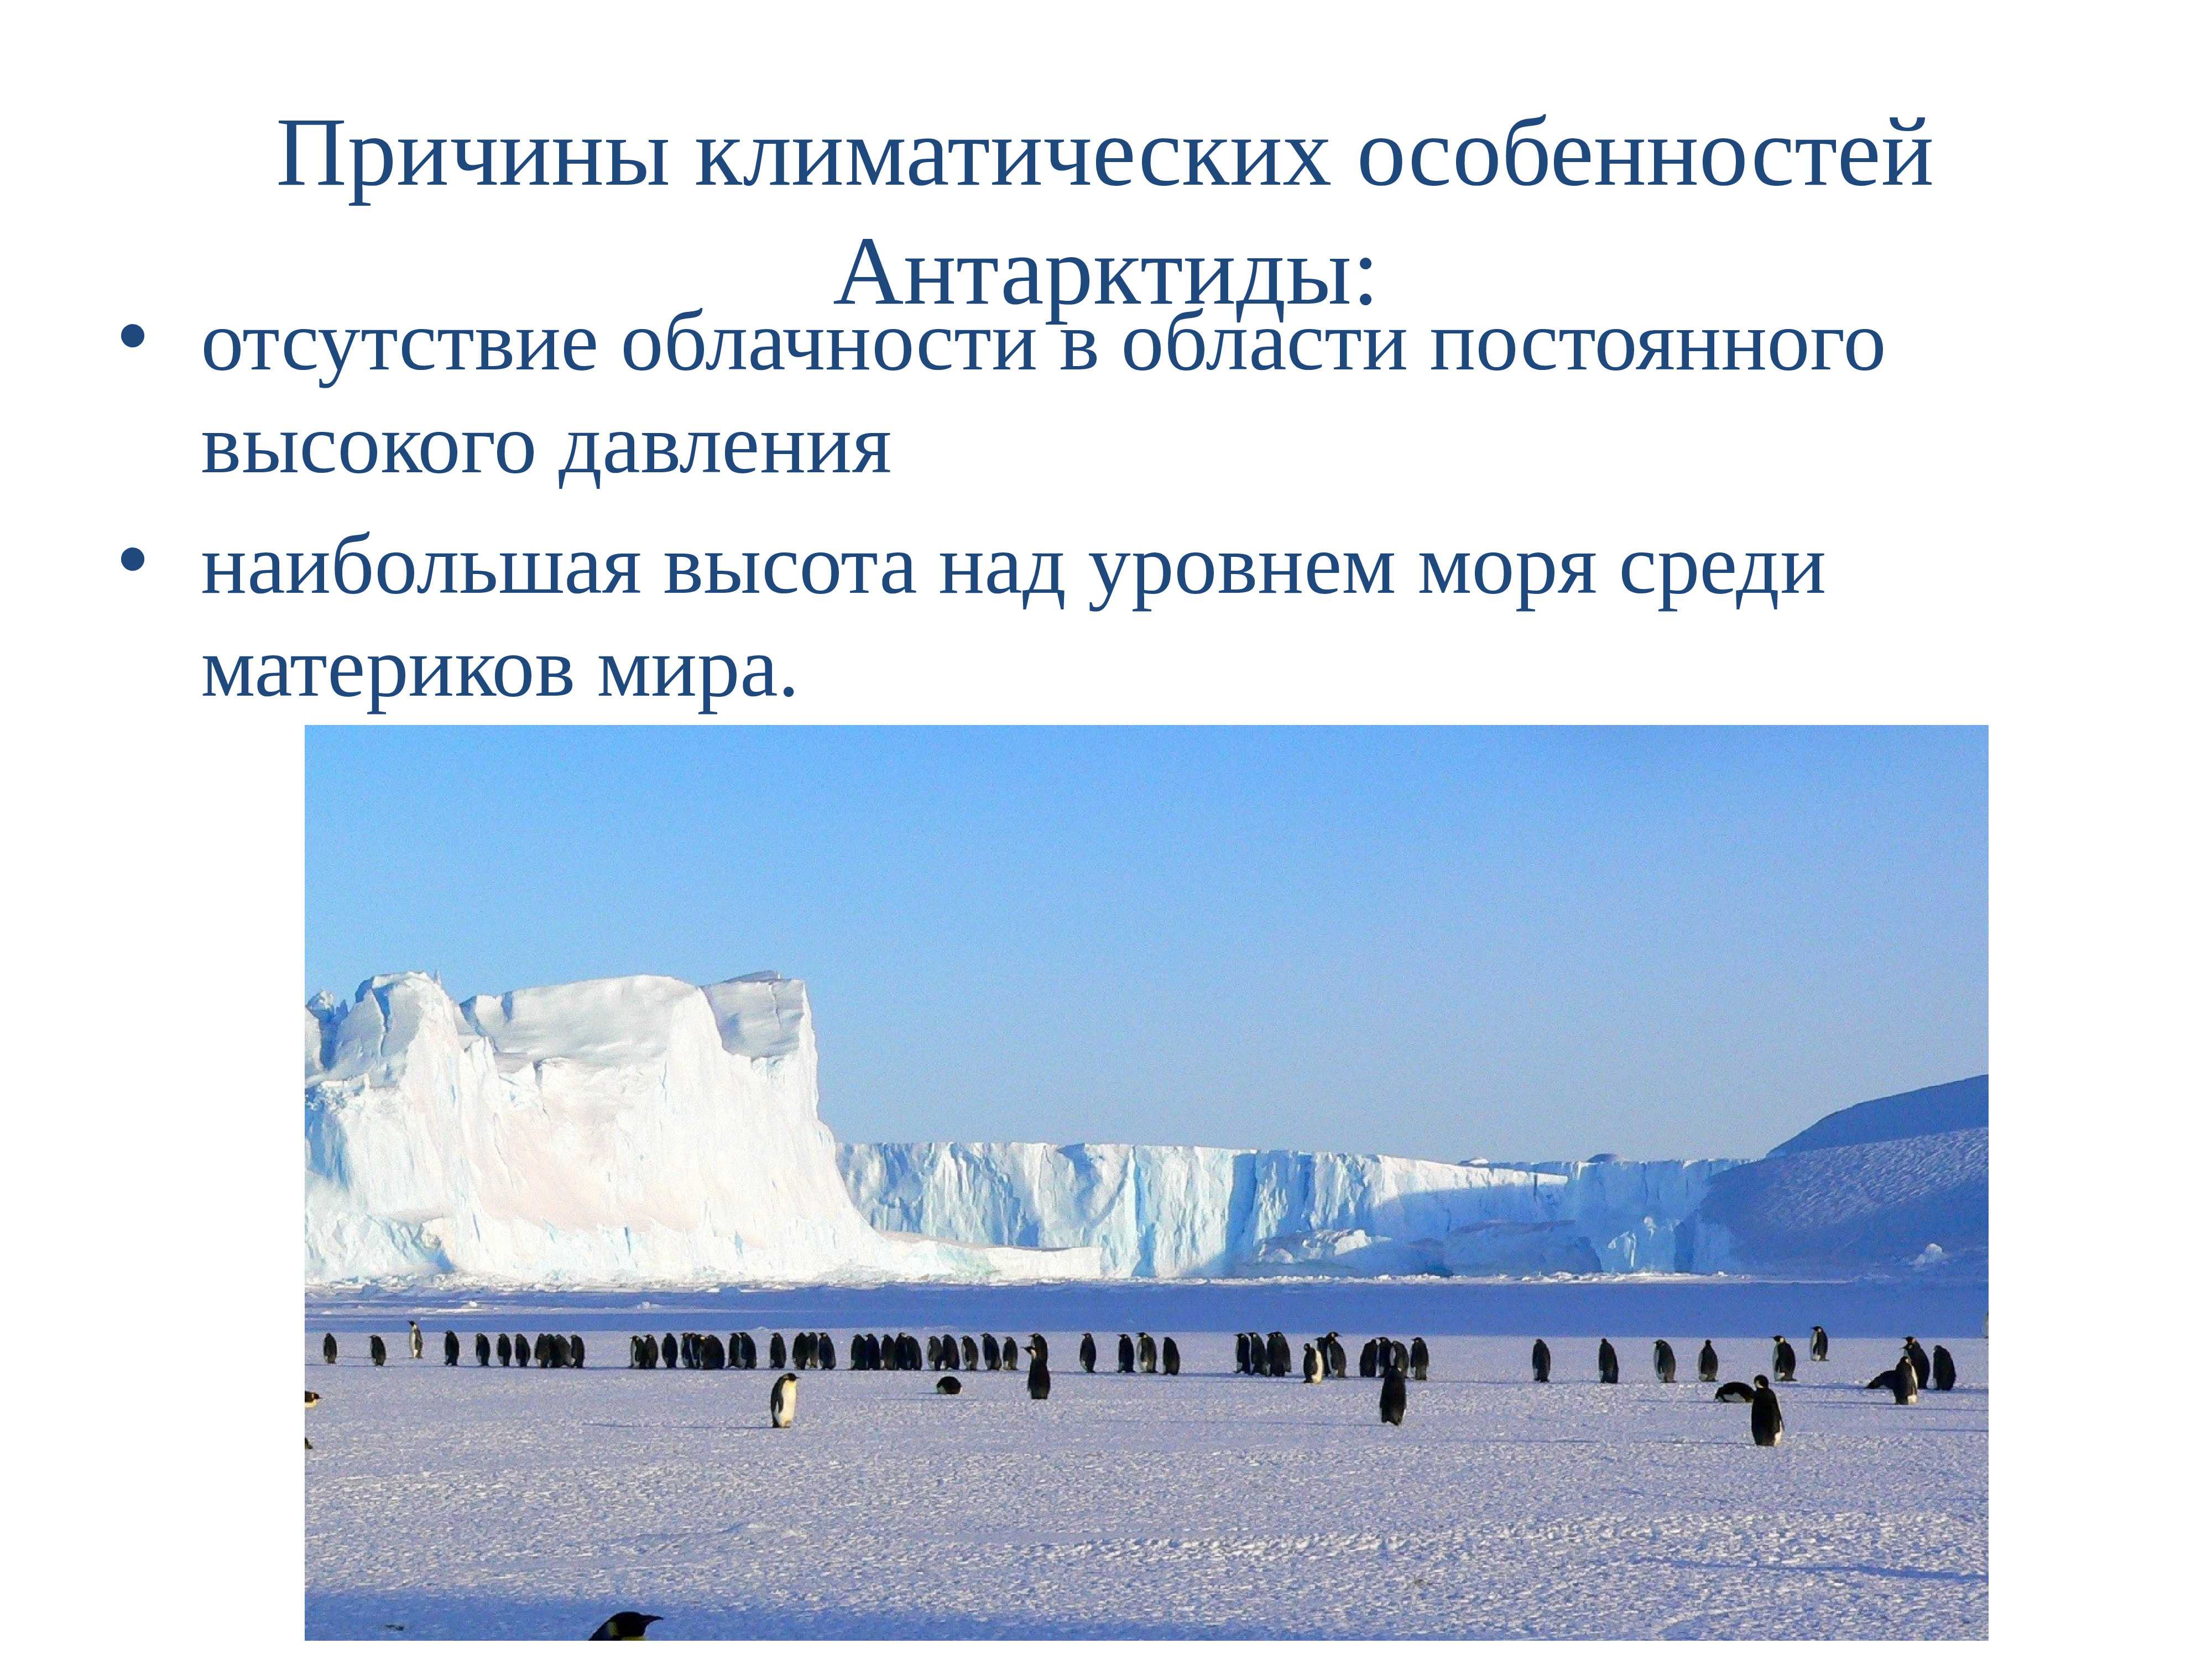 Научные полярные станции в антарктиде: действующие российские базы